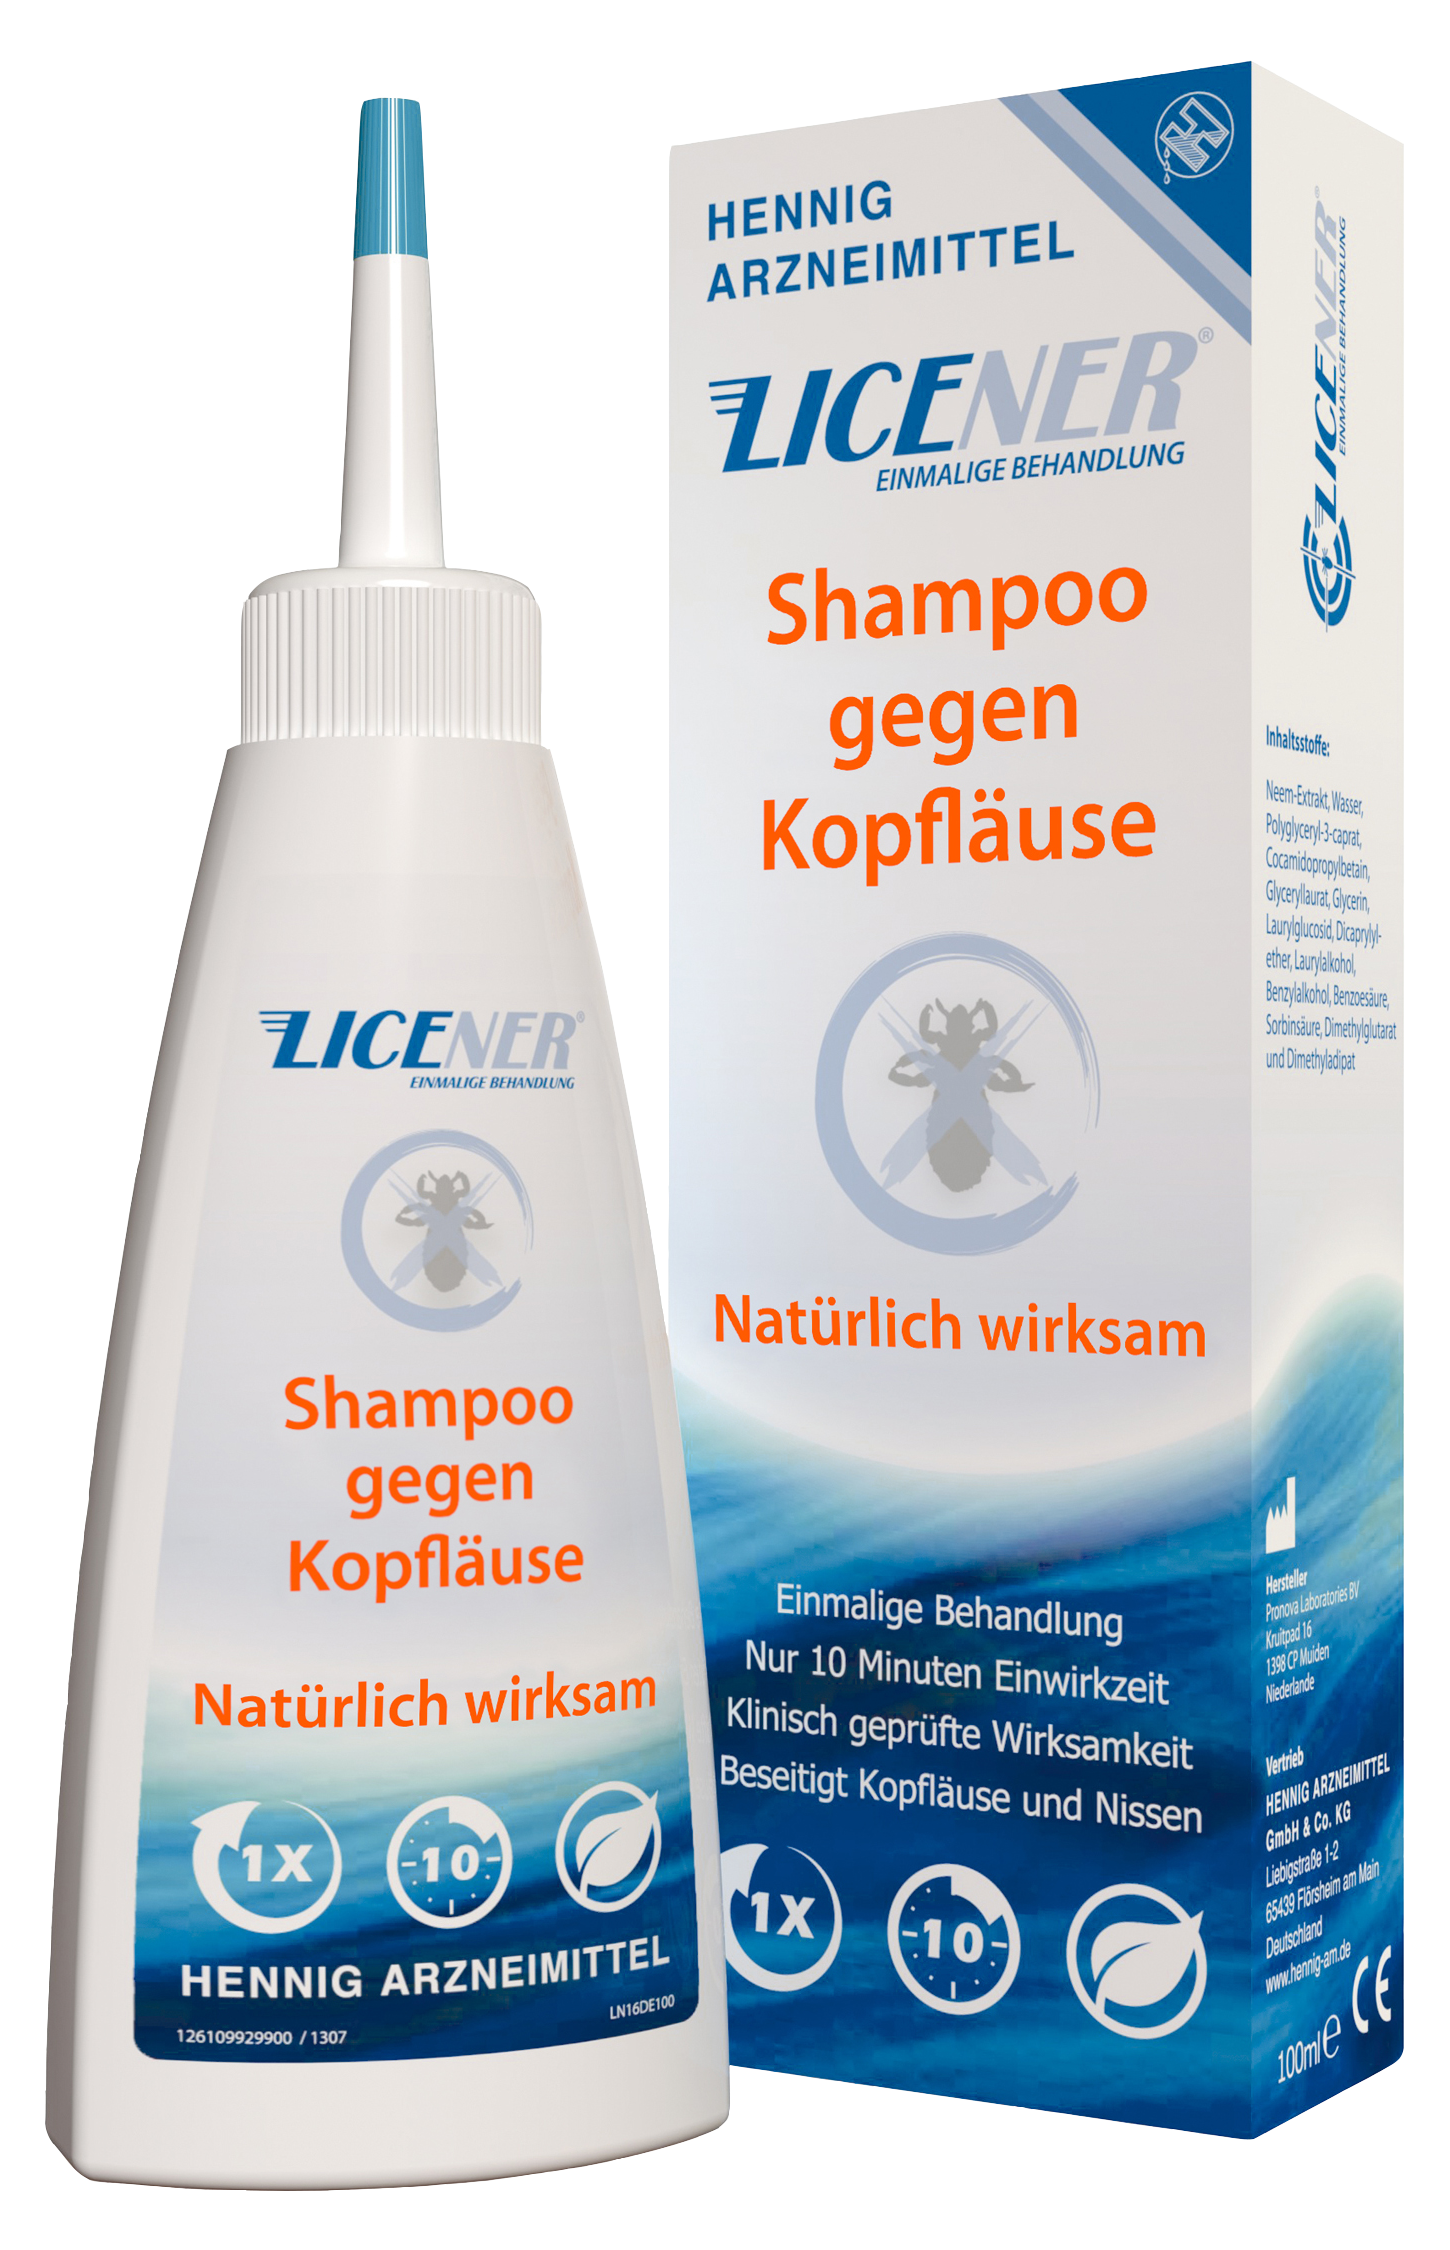 Licener® Shampoo gegen Nissen - HENNIG ARZNEIMITTEL